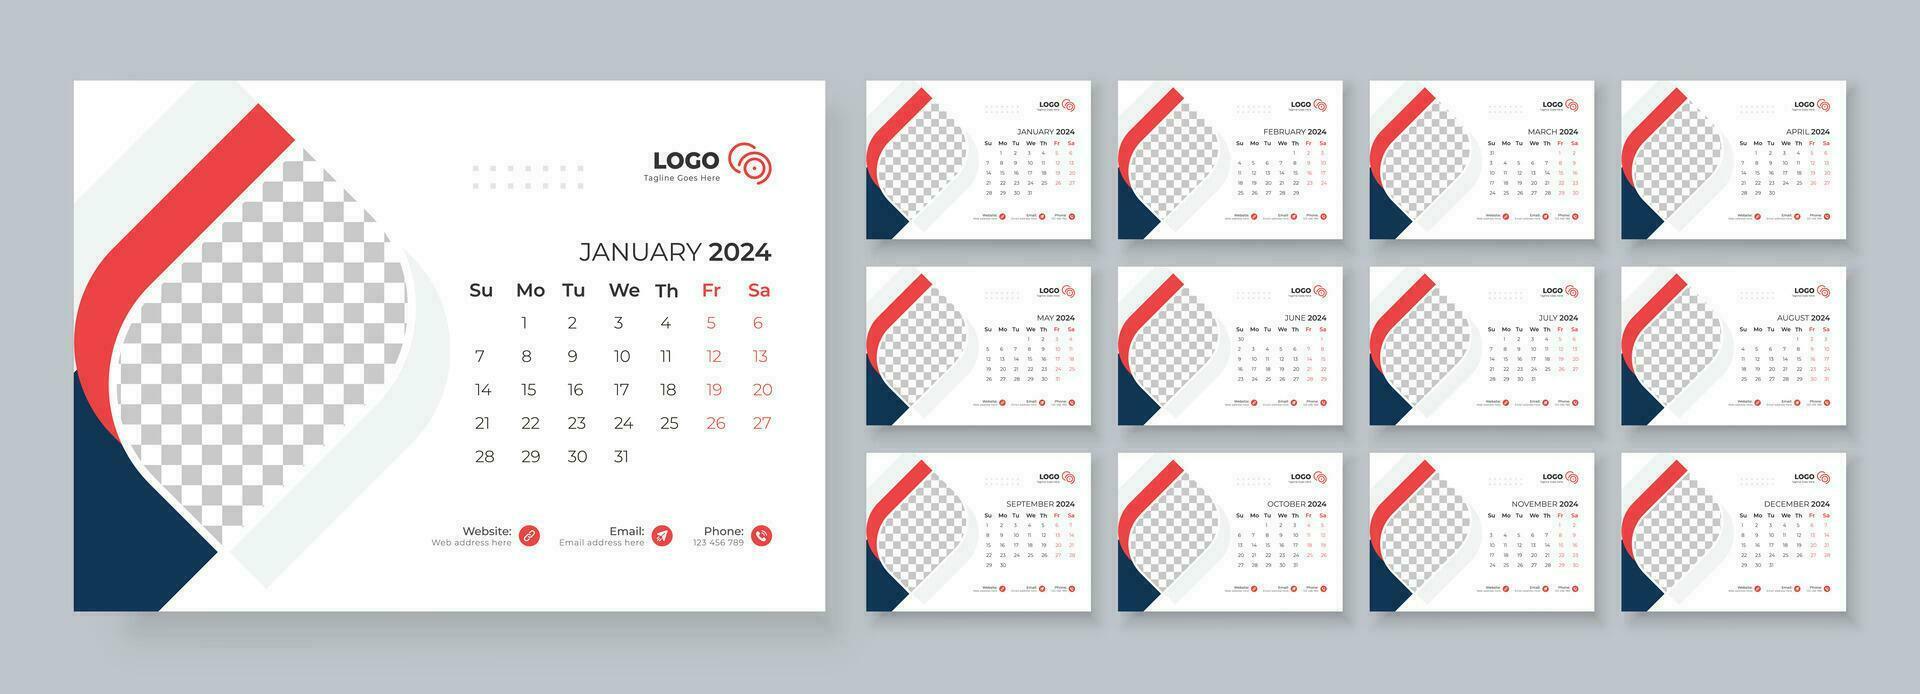 escritorio calendario modelo 2024, modelo para anual calendario 2024, escritorio calendario calendario en un minimalista estilo vector